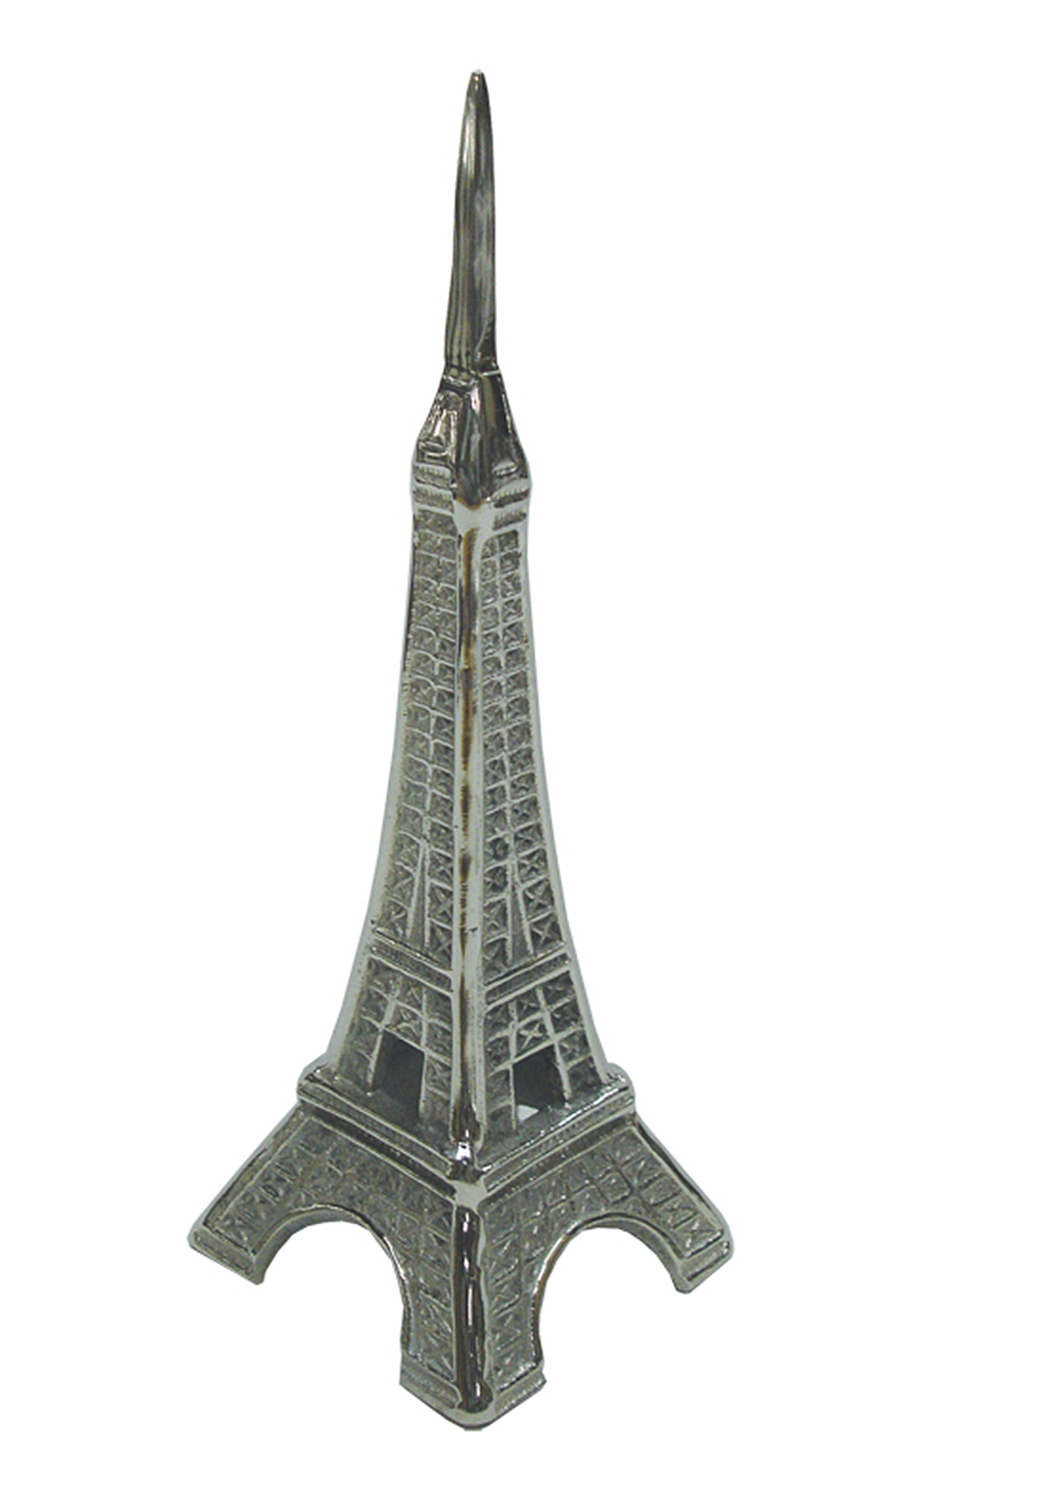 Ren-Wil Eiffel Tower Statue - Satin nickel